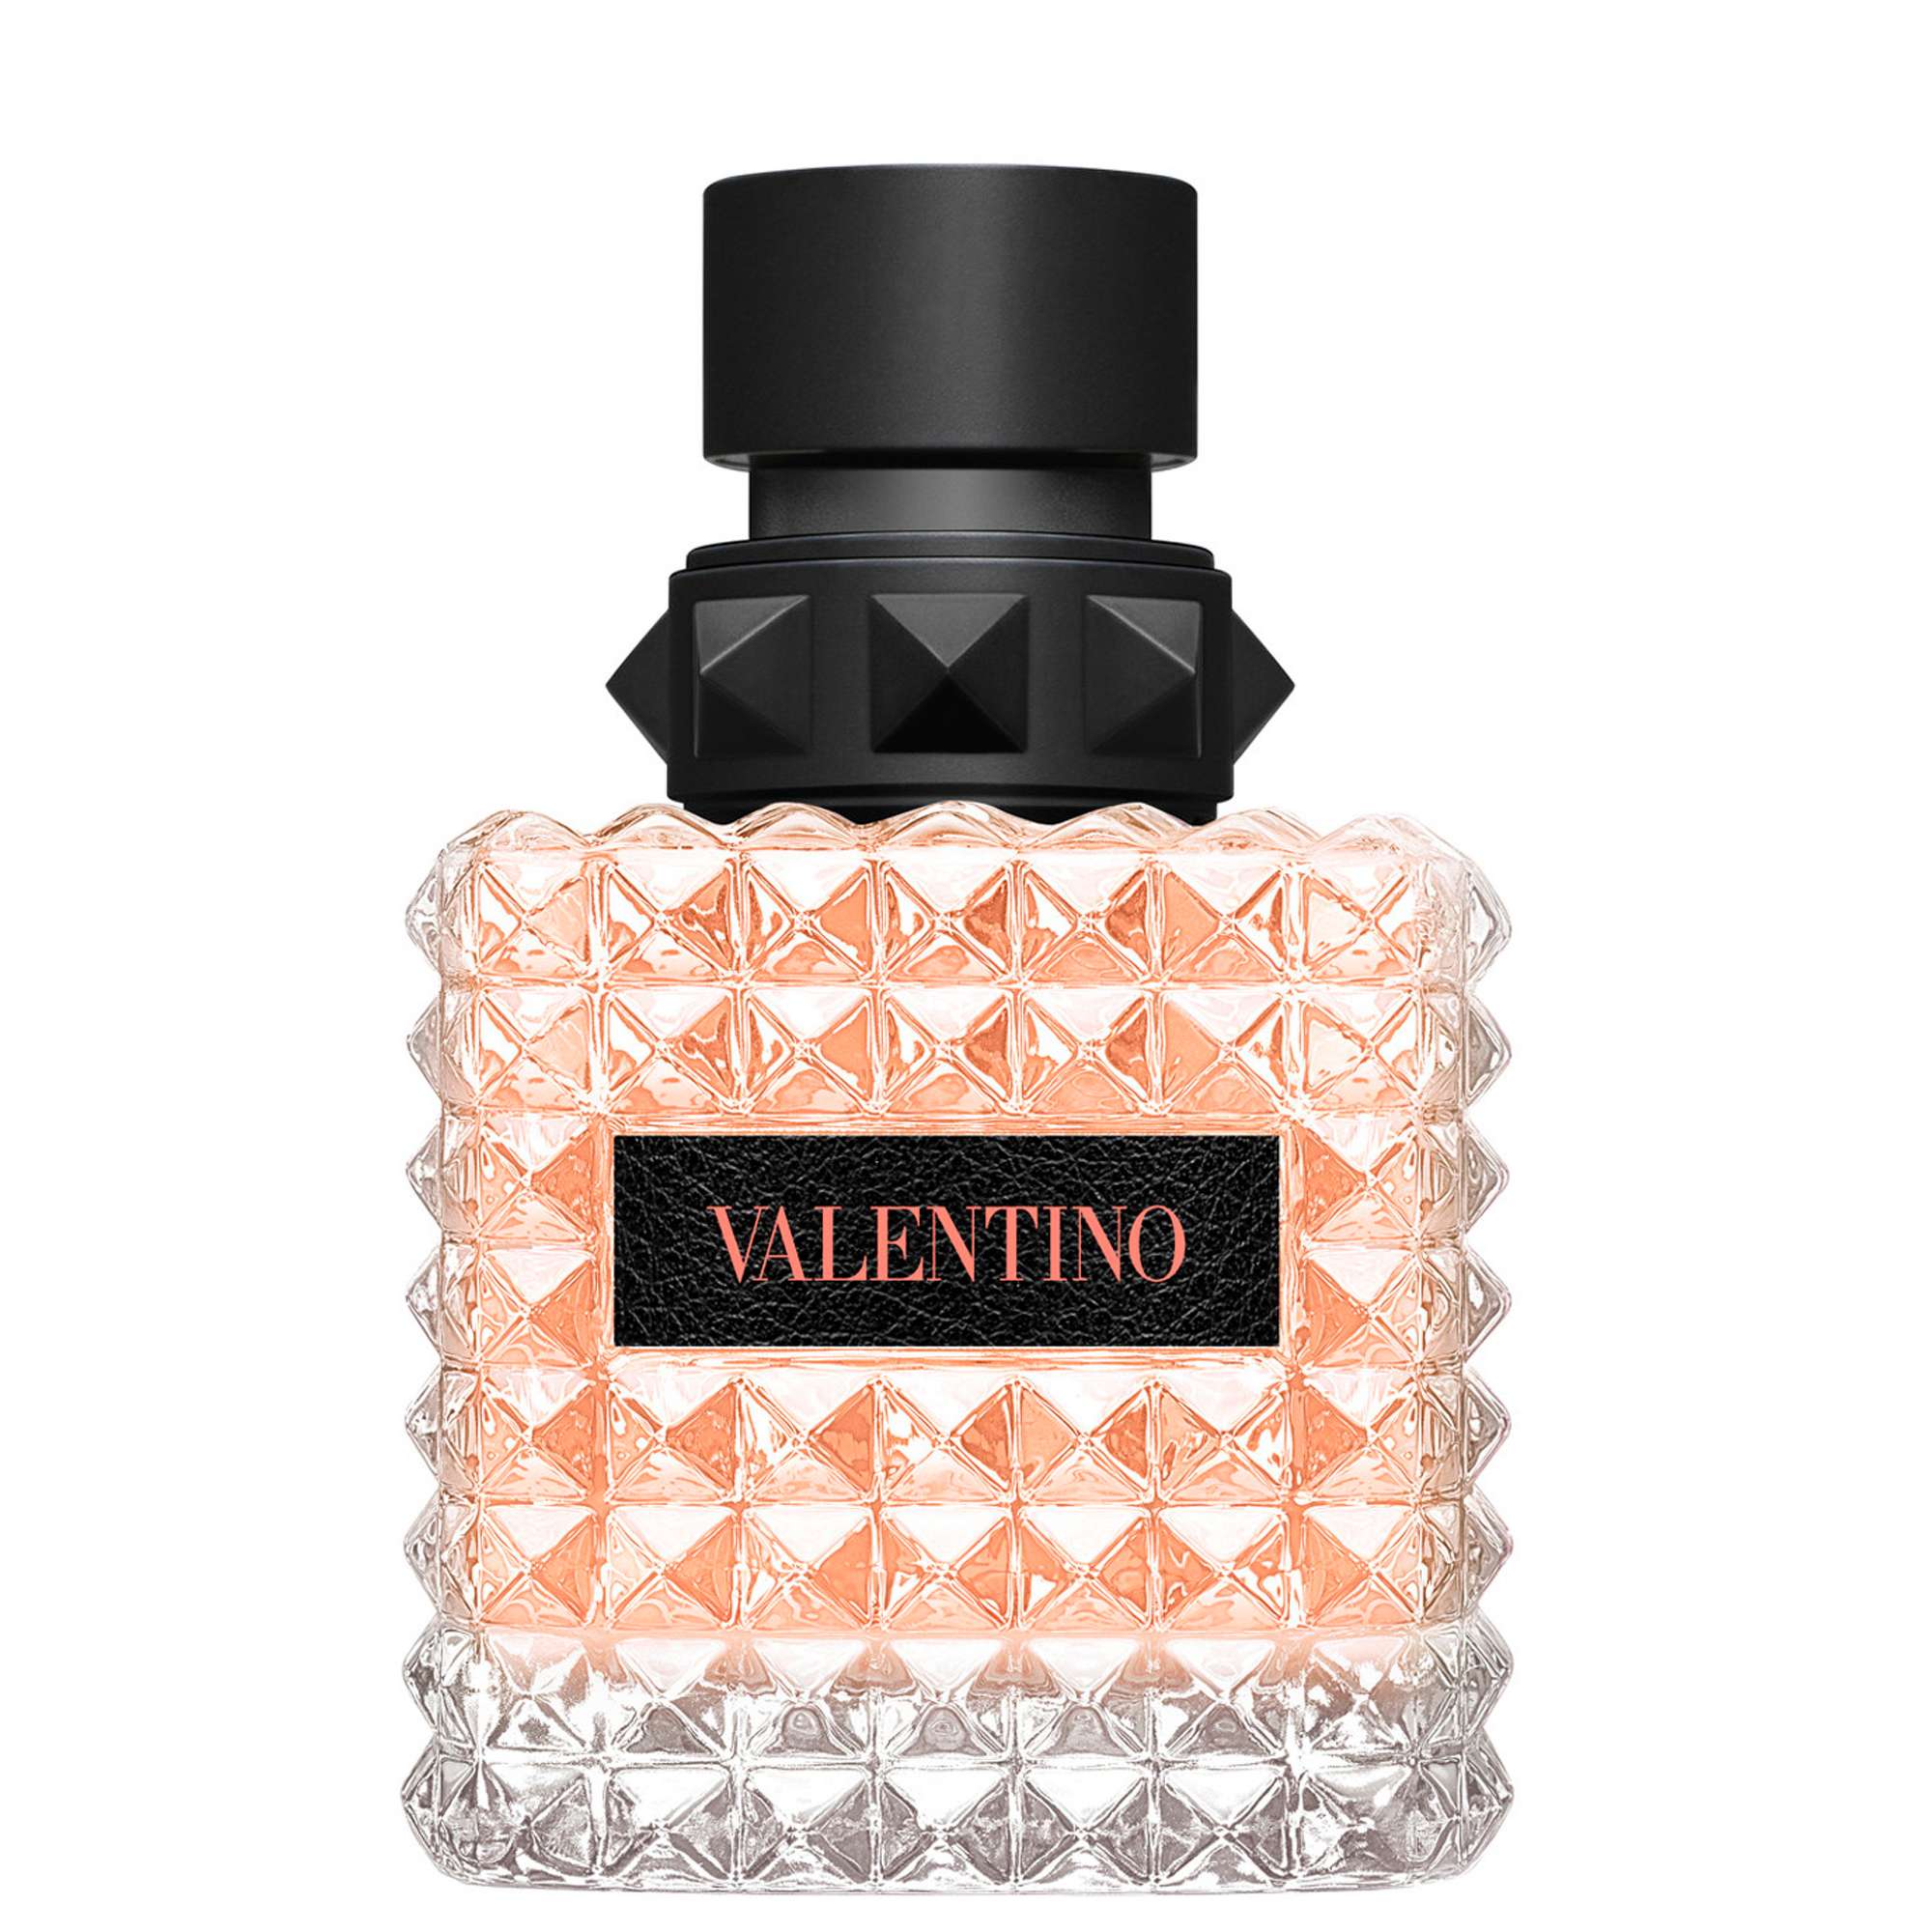 Photos - Women's Fragrance Valentino Born in Roma Coral Fantasy Eau de Parfum Spray 50ml 